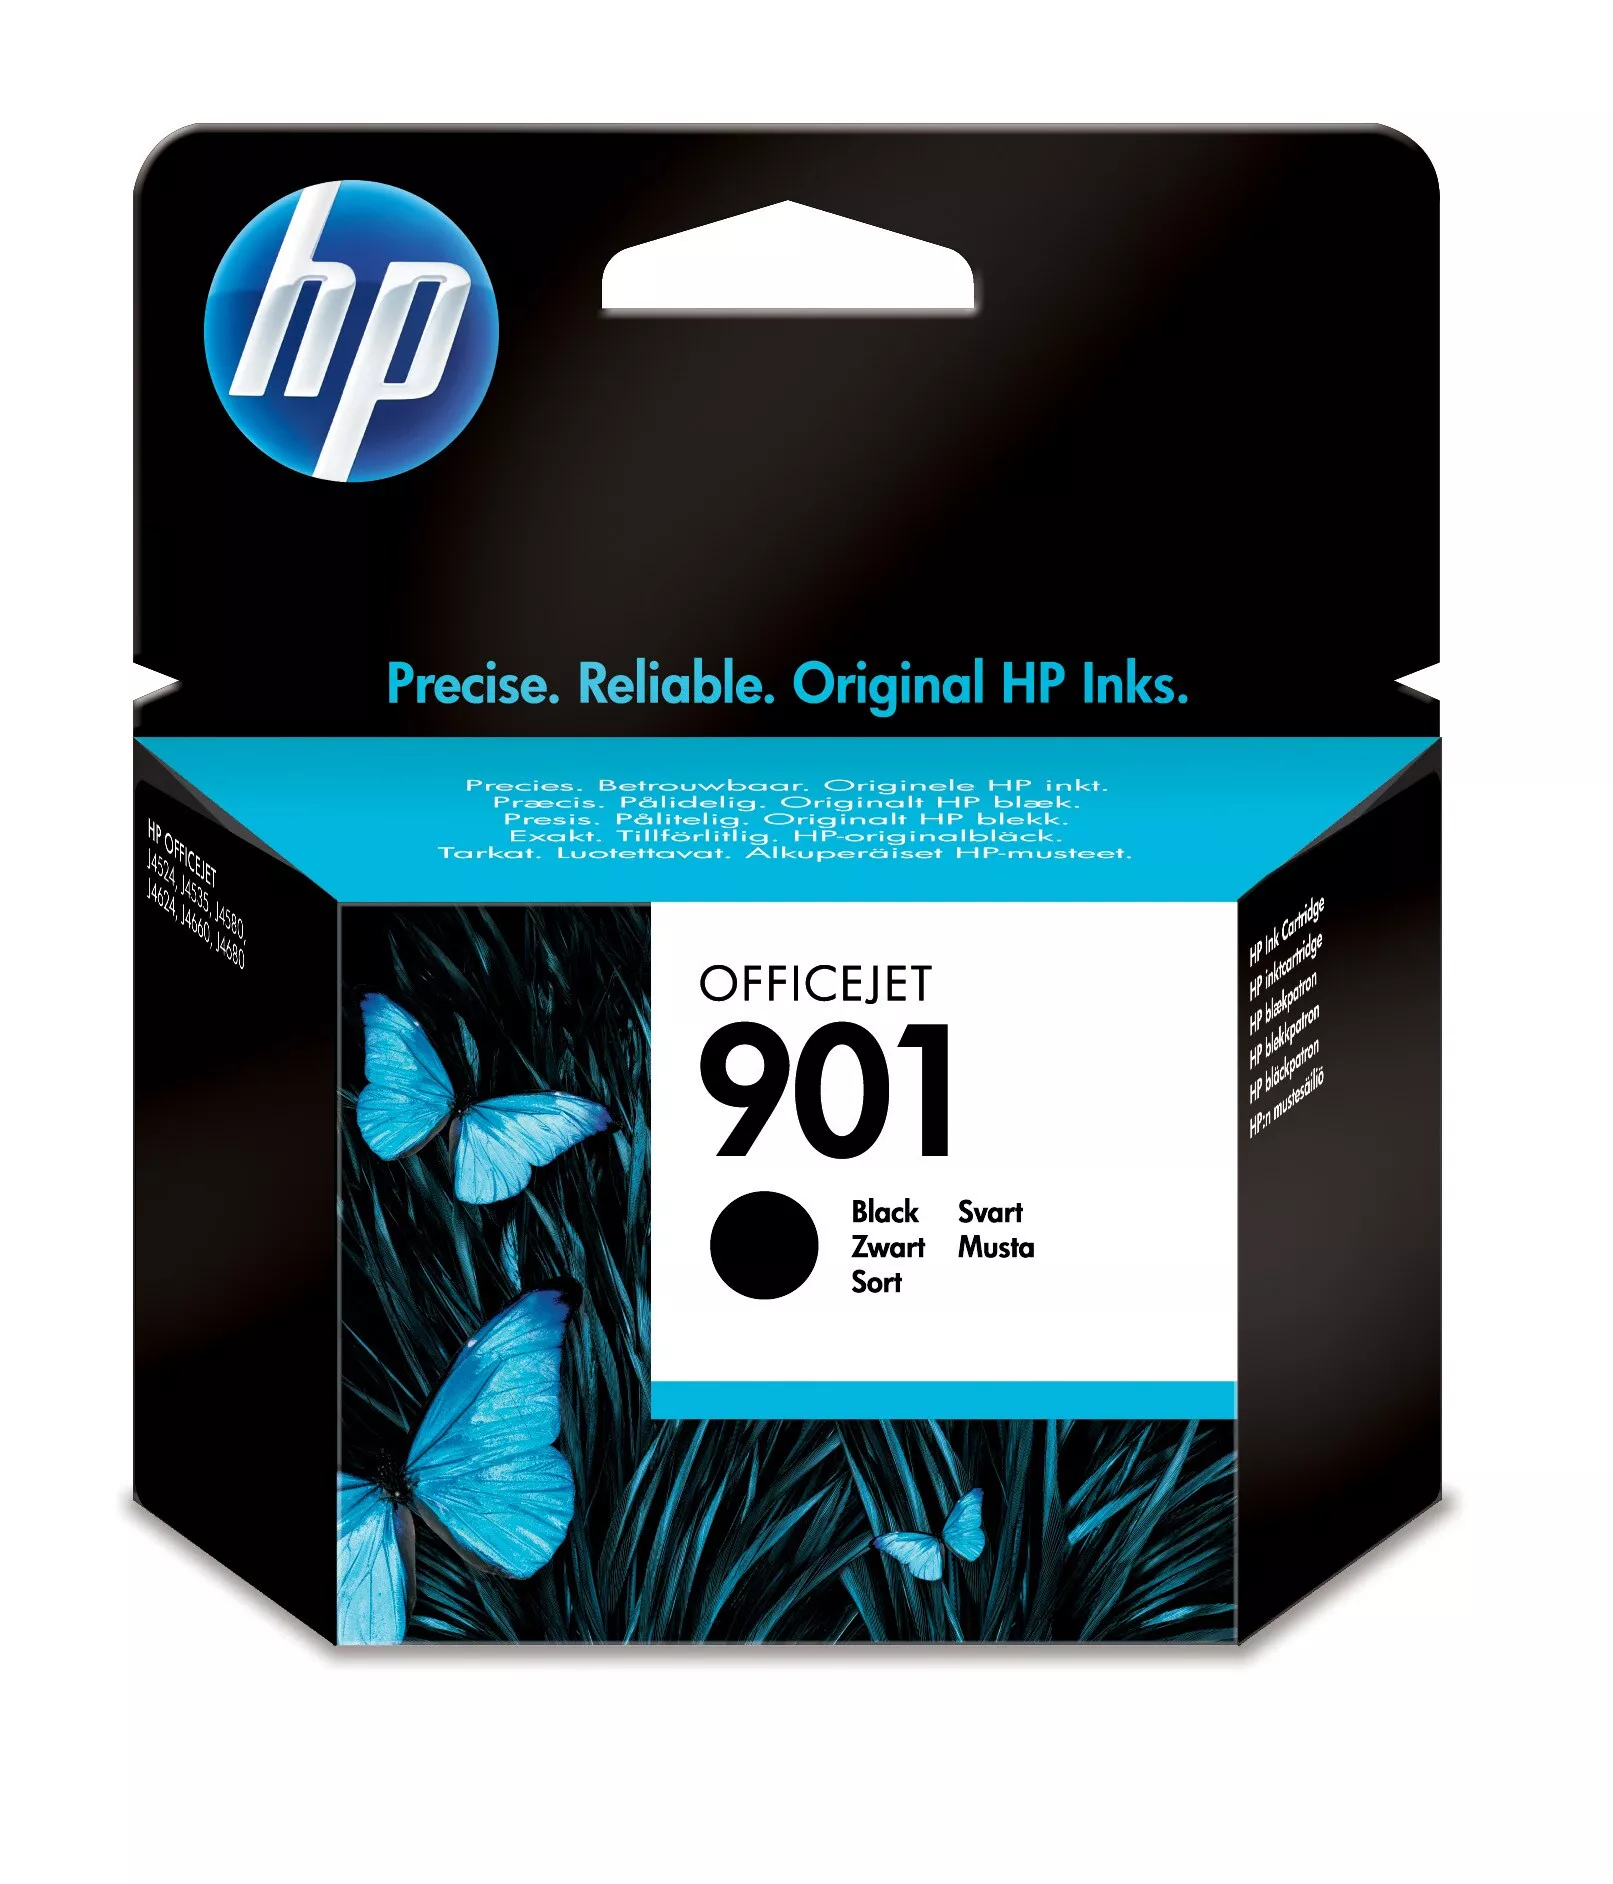 Achat HP 901 cartouche d'encre noir authentique au meilleur prix